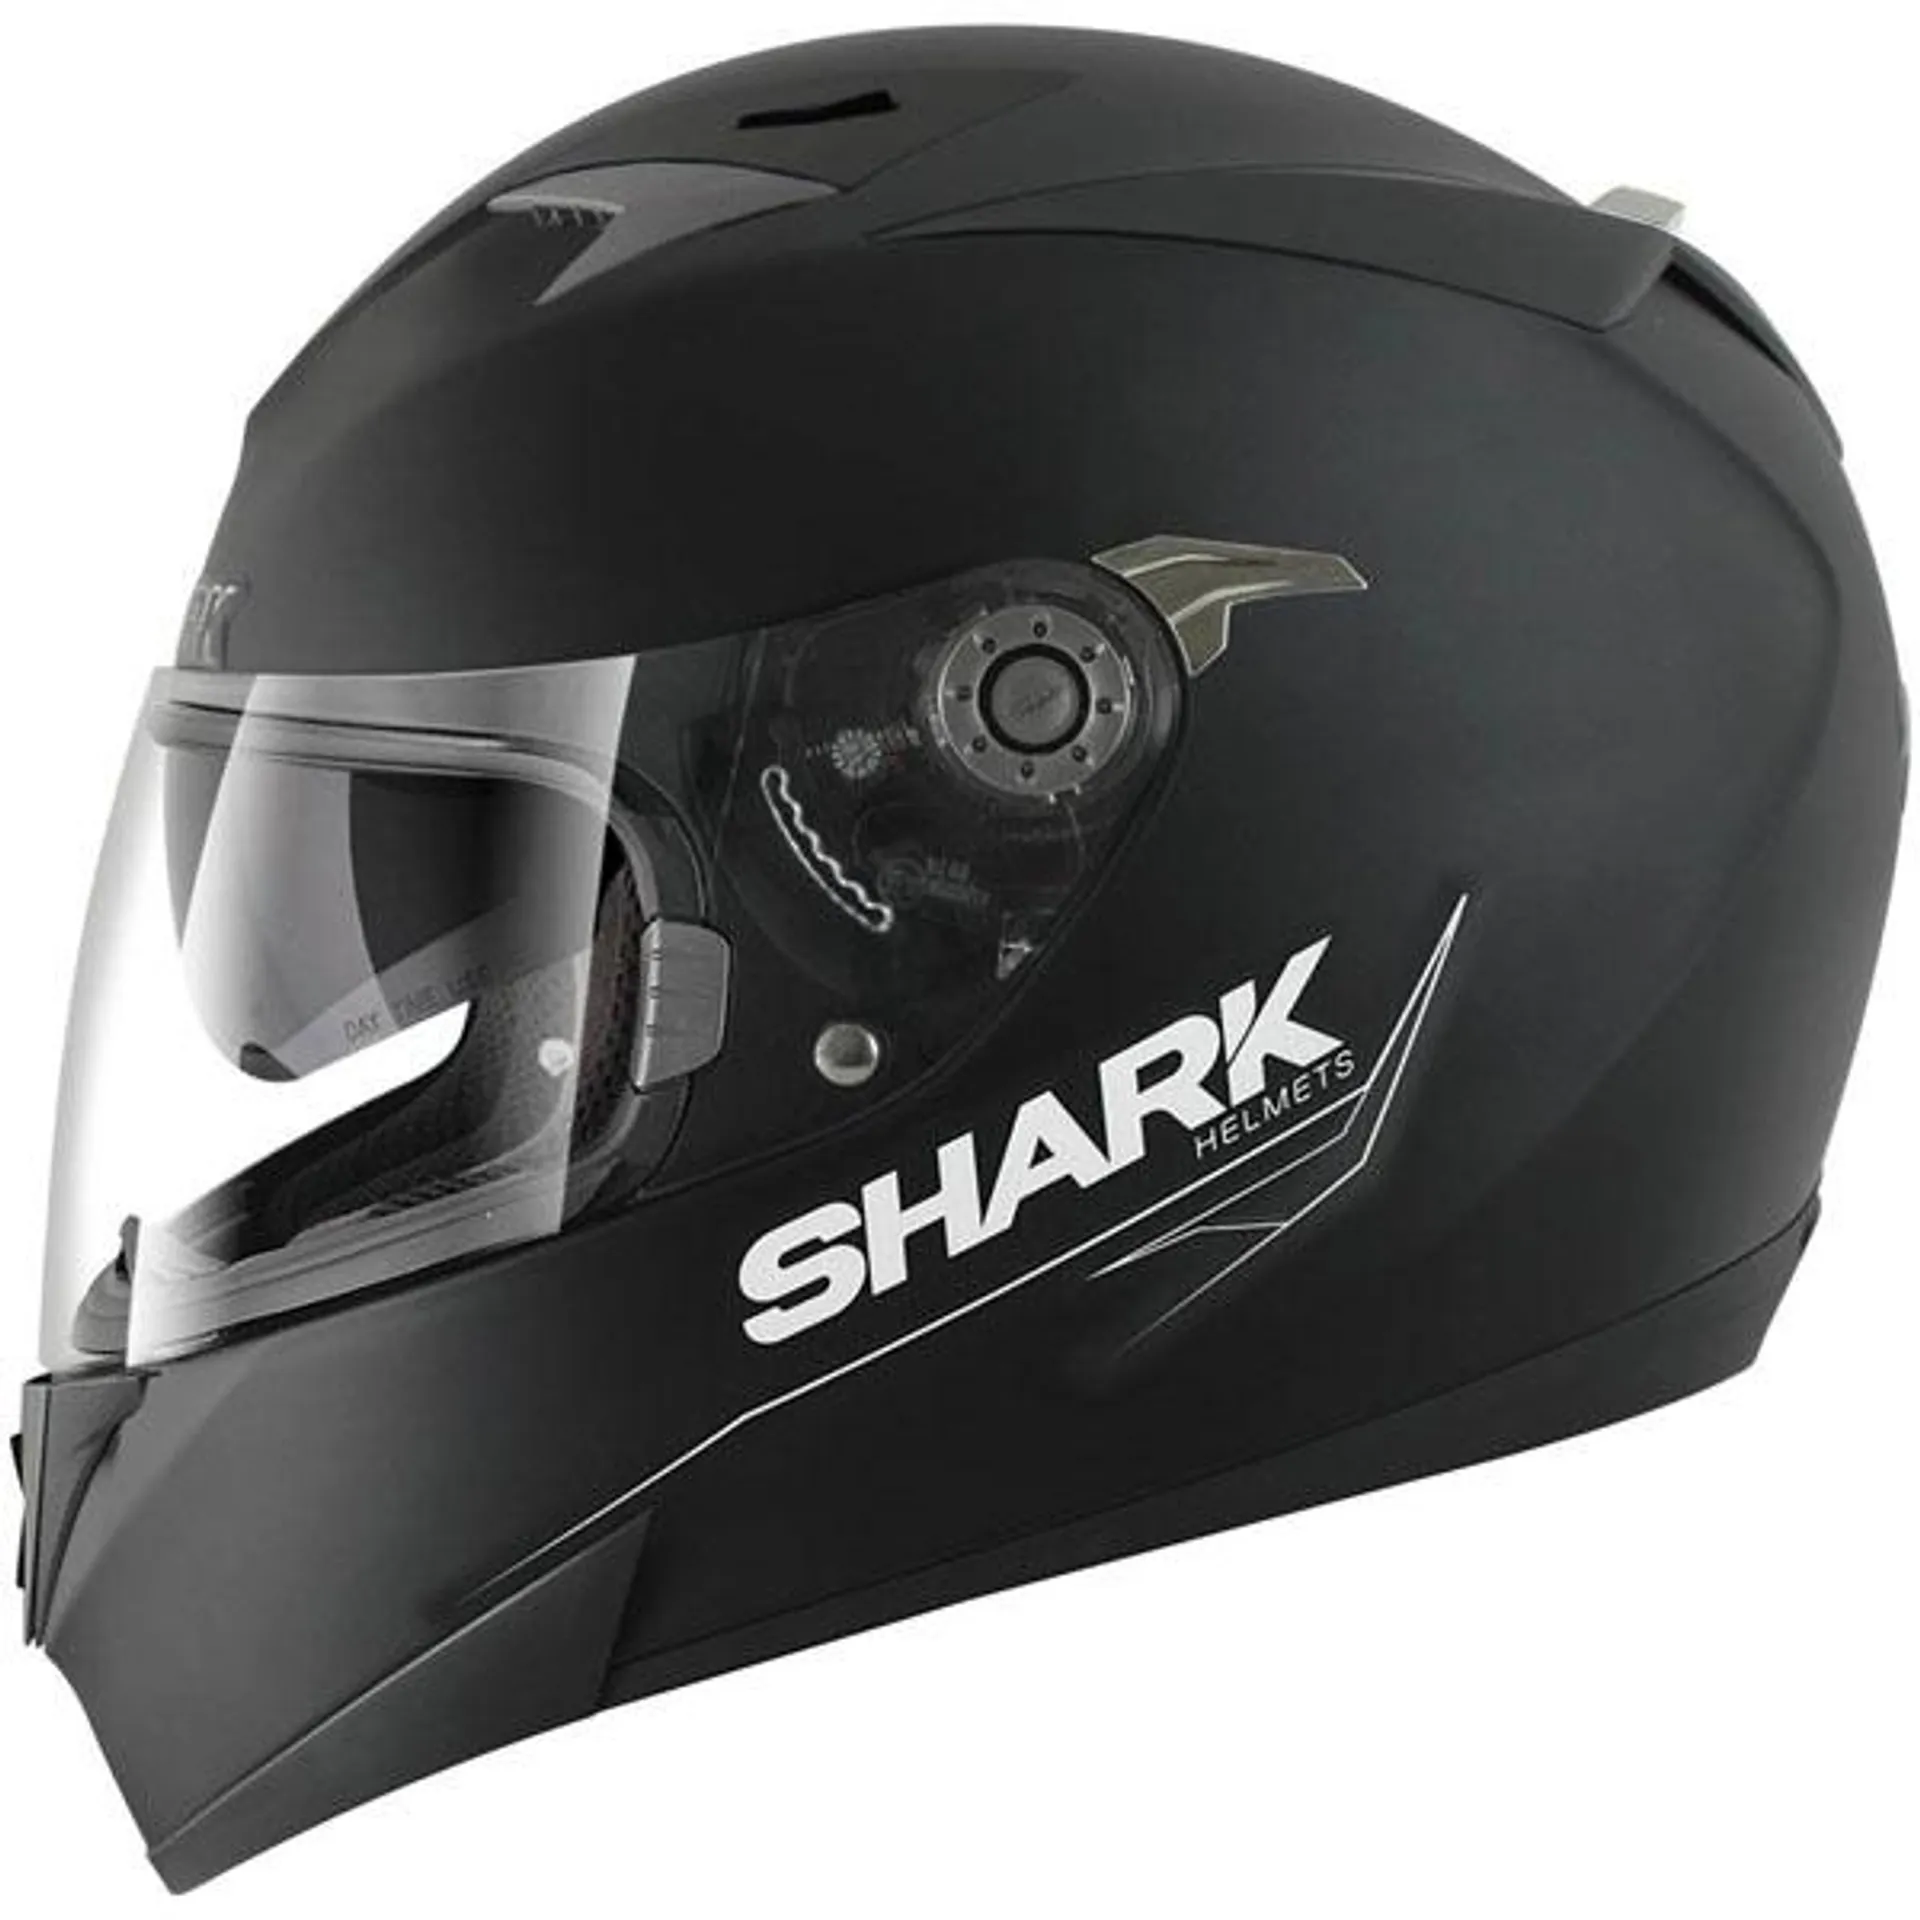 Shark S900 Dual Special Edition - Matt Black